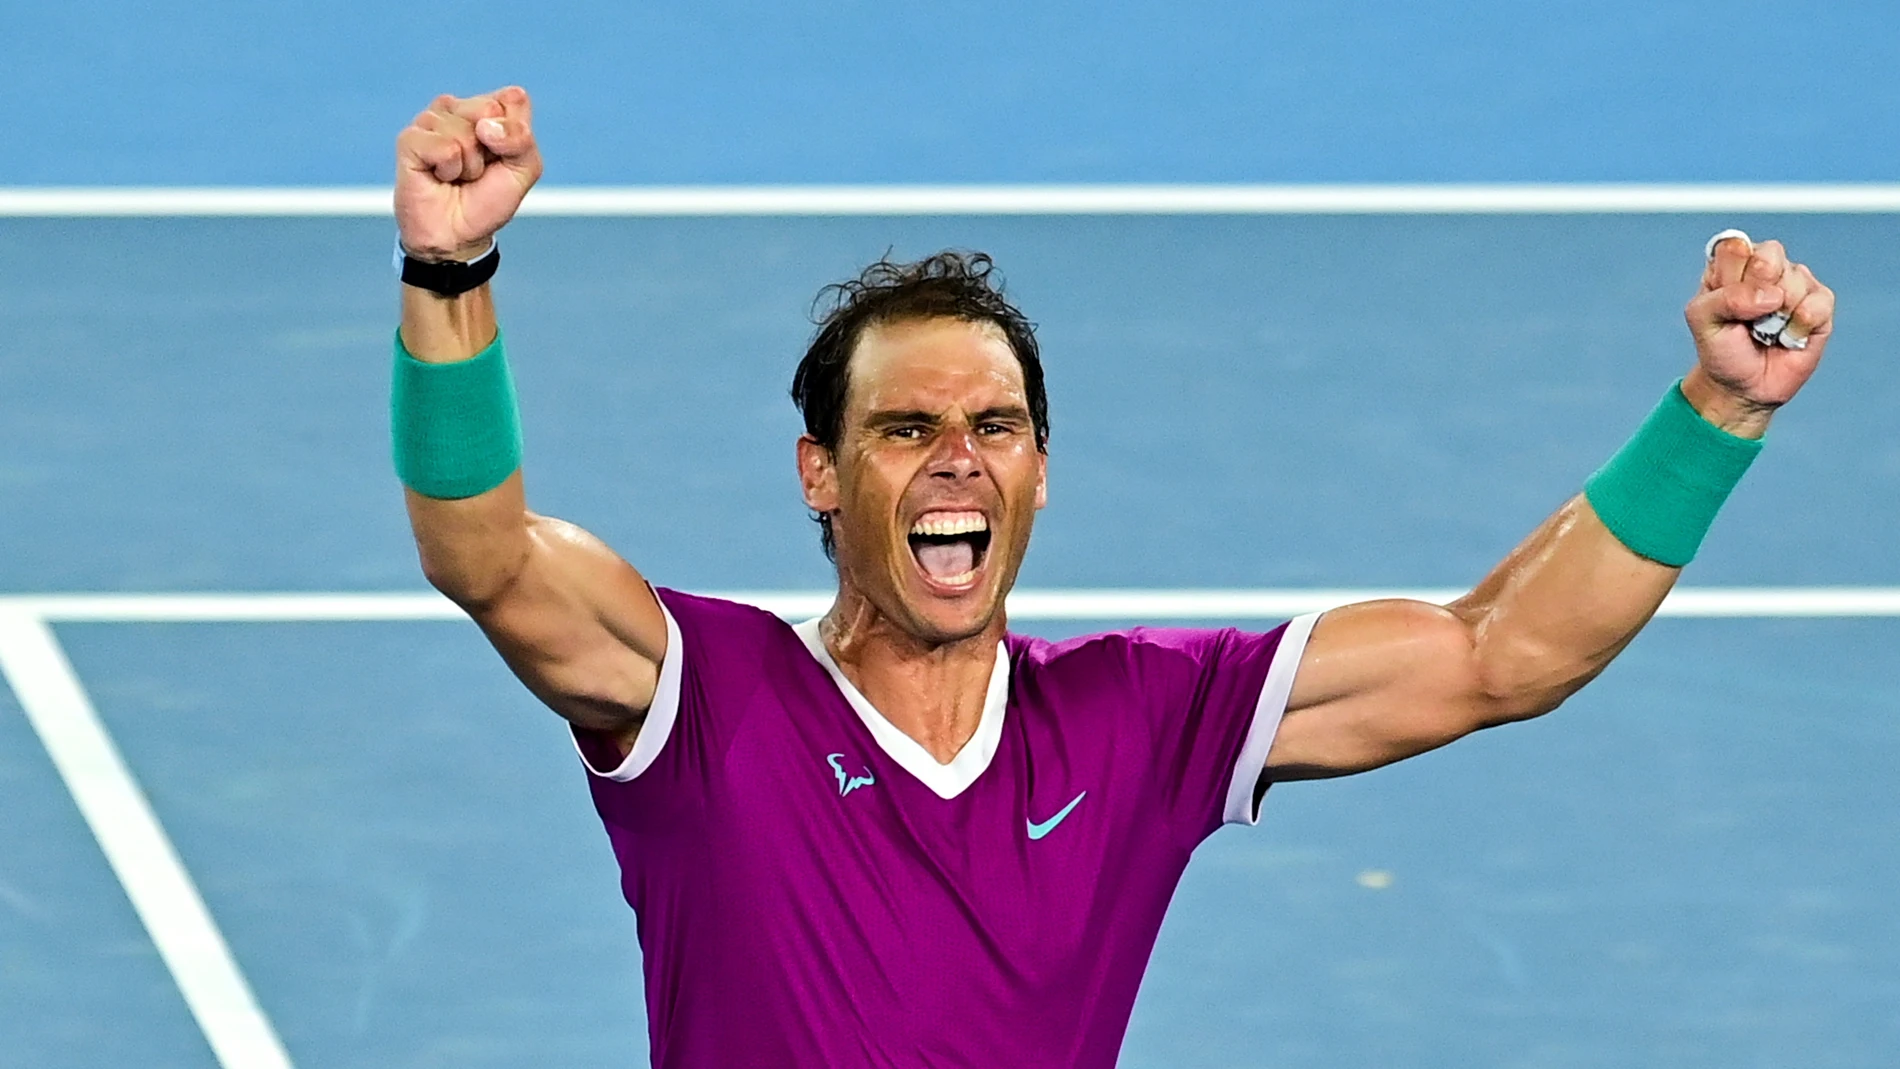 Rafa Nadal celebra su victoria en el Open de Australia